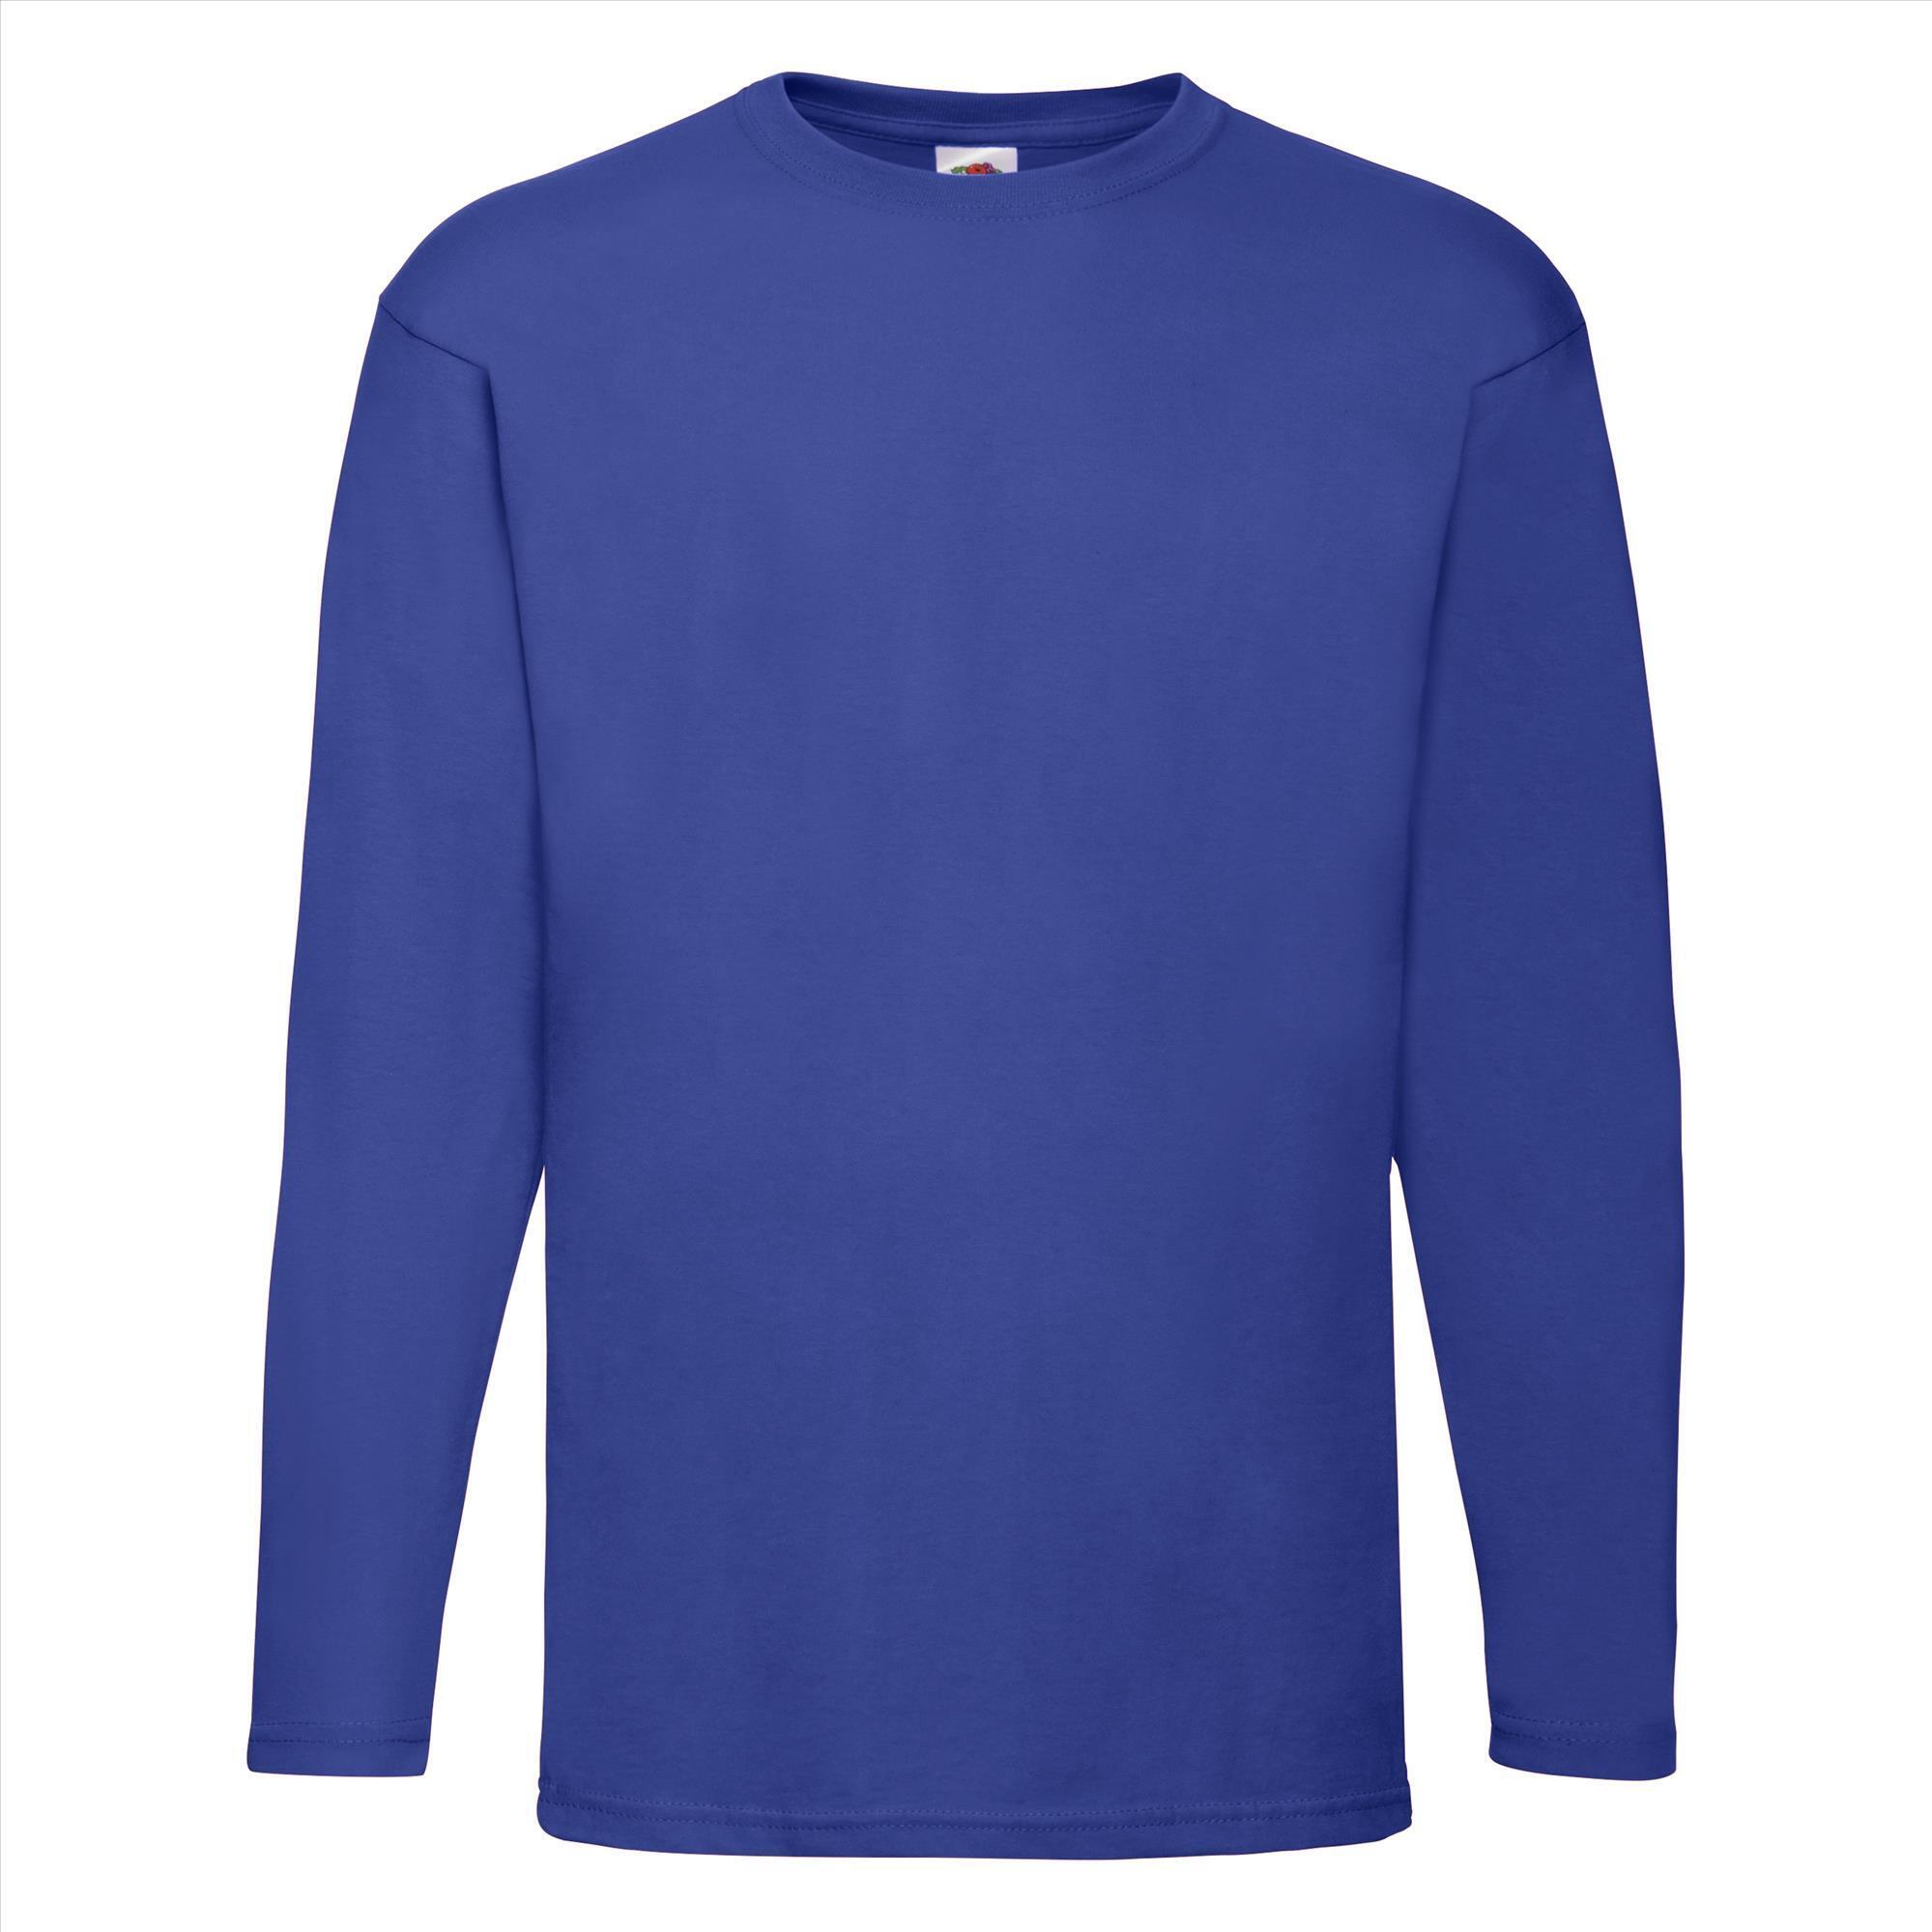 T-shirt royal blauw lange mouwen voor mannen bedrukbaar te personaliseren